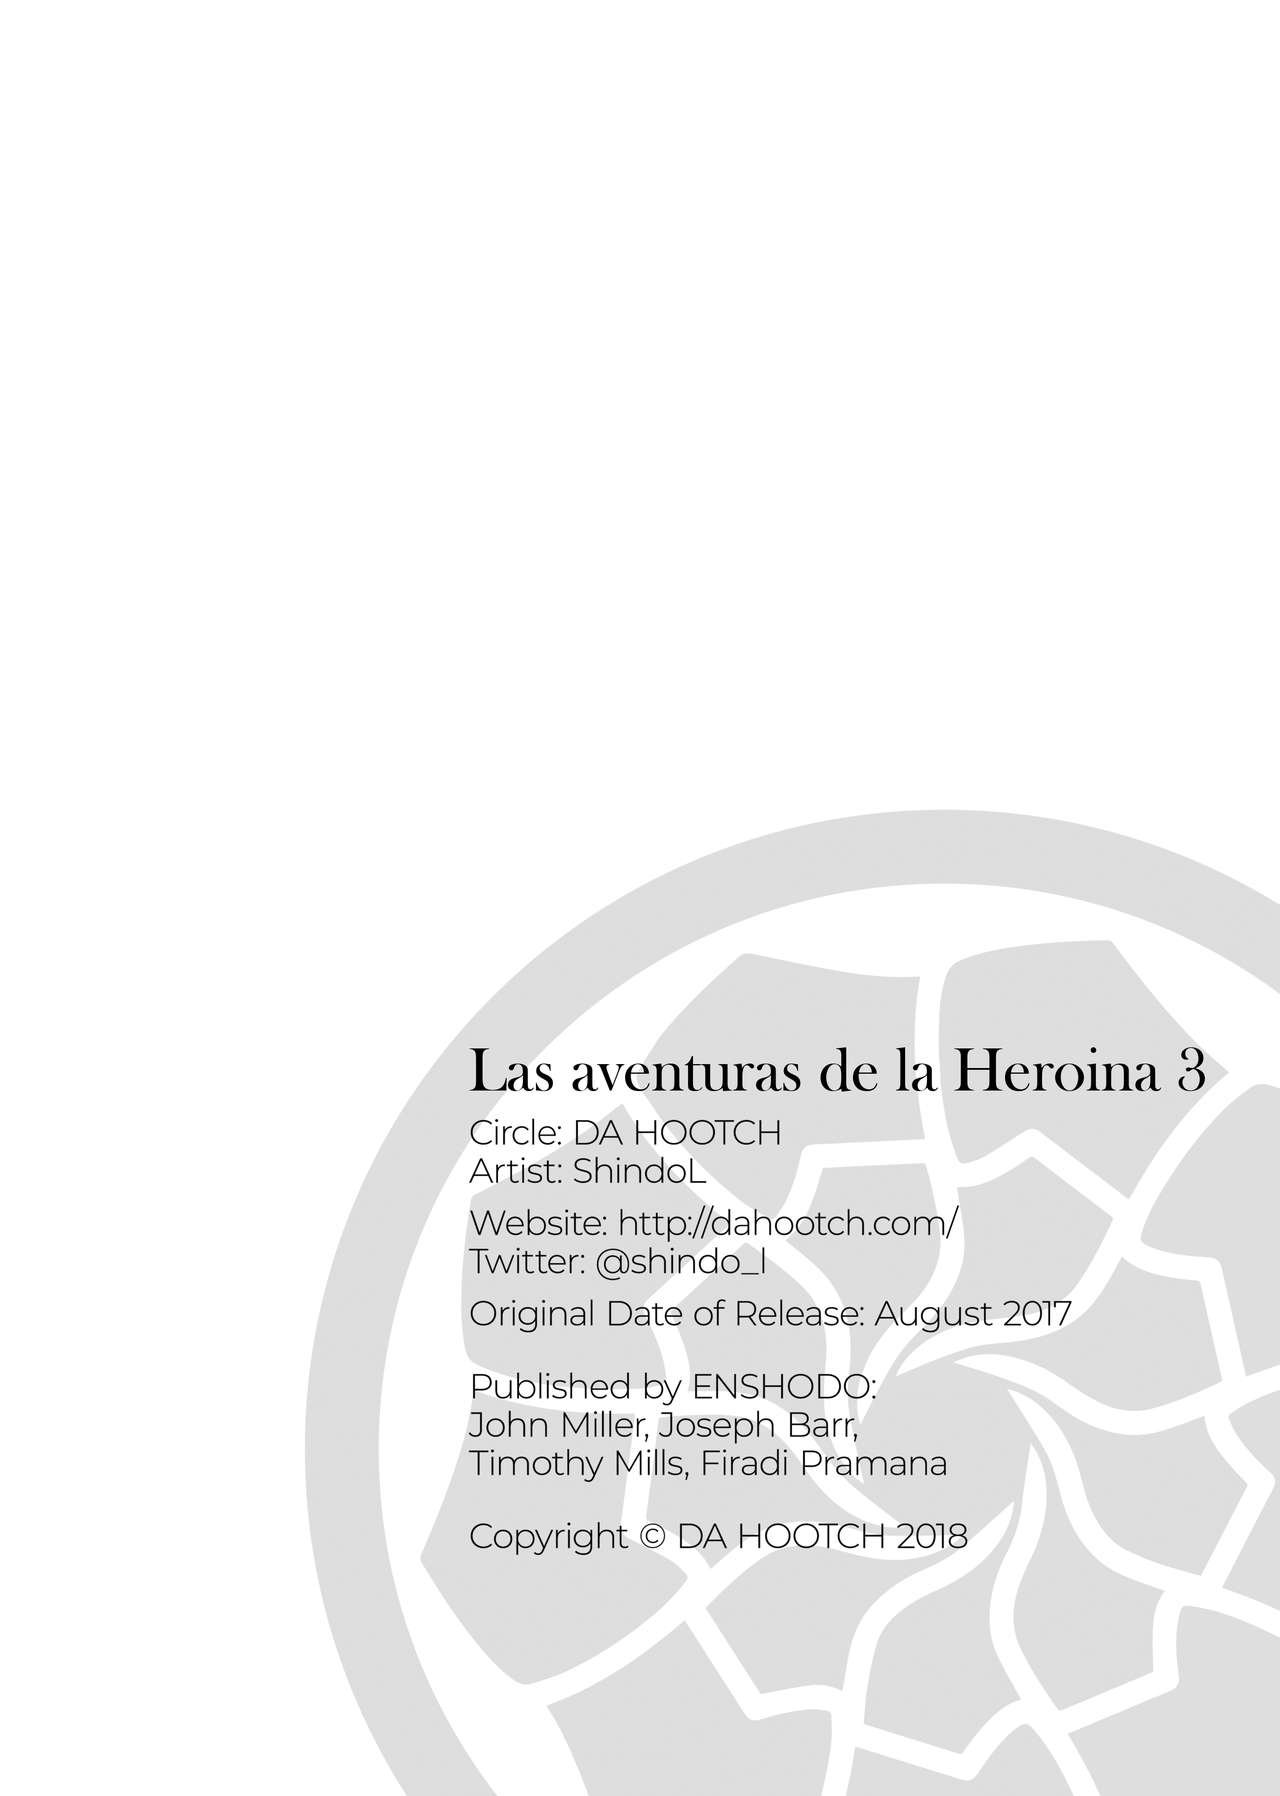 female hero Is journey 3 - Las aventuras de la heroina 3 - 39